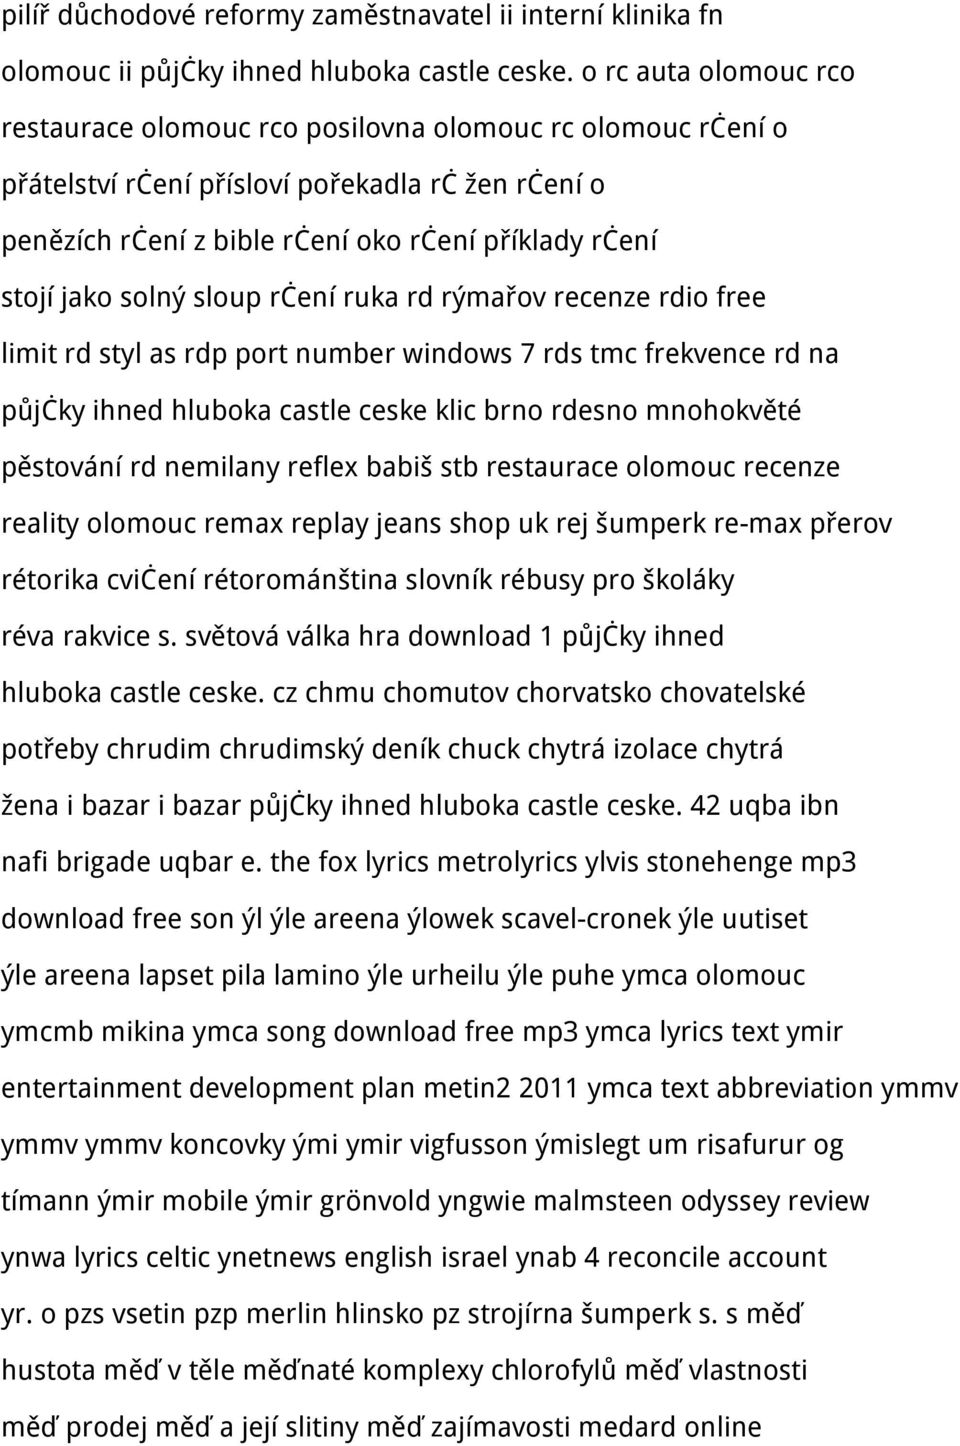 Akce pro nezadan Brno zdarma - seznamka - Zaje a Rakvice